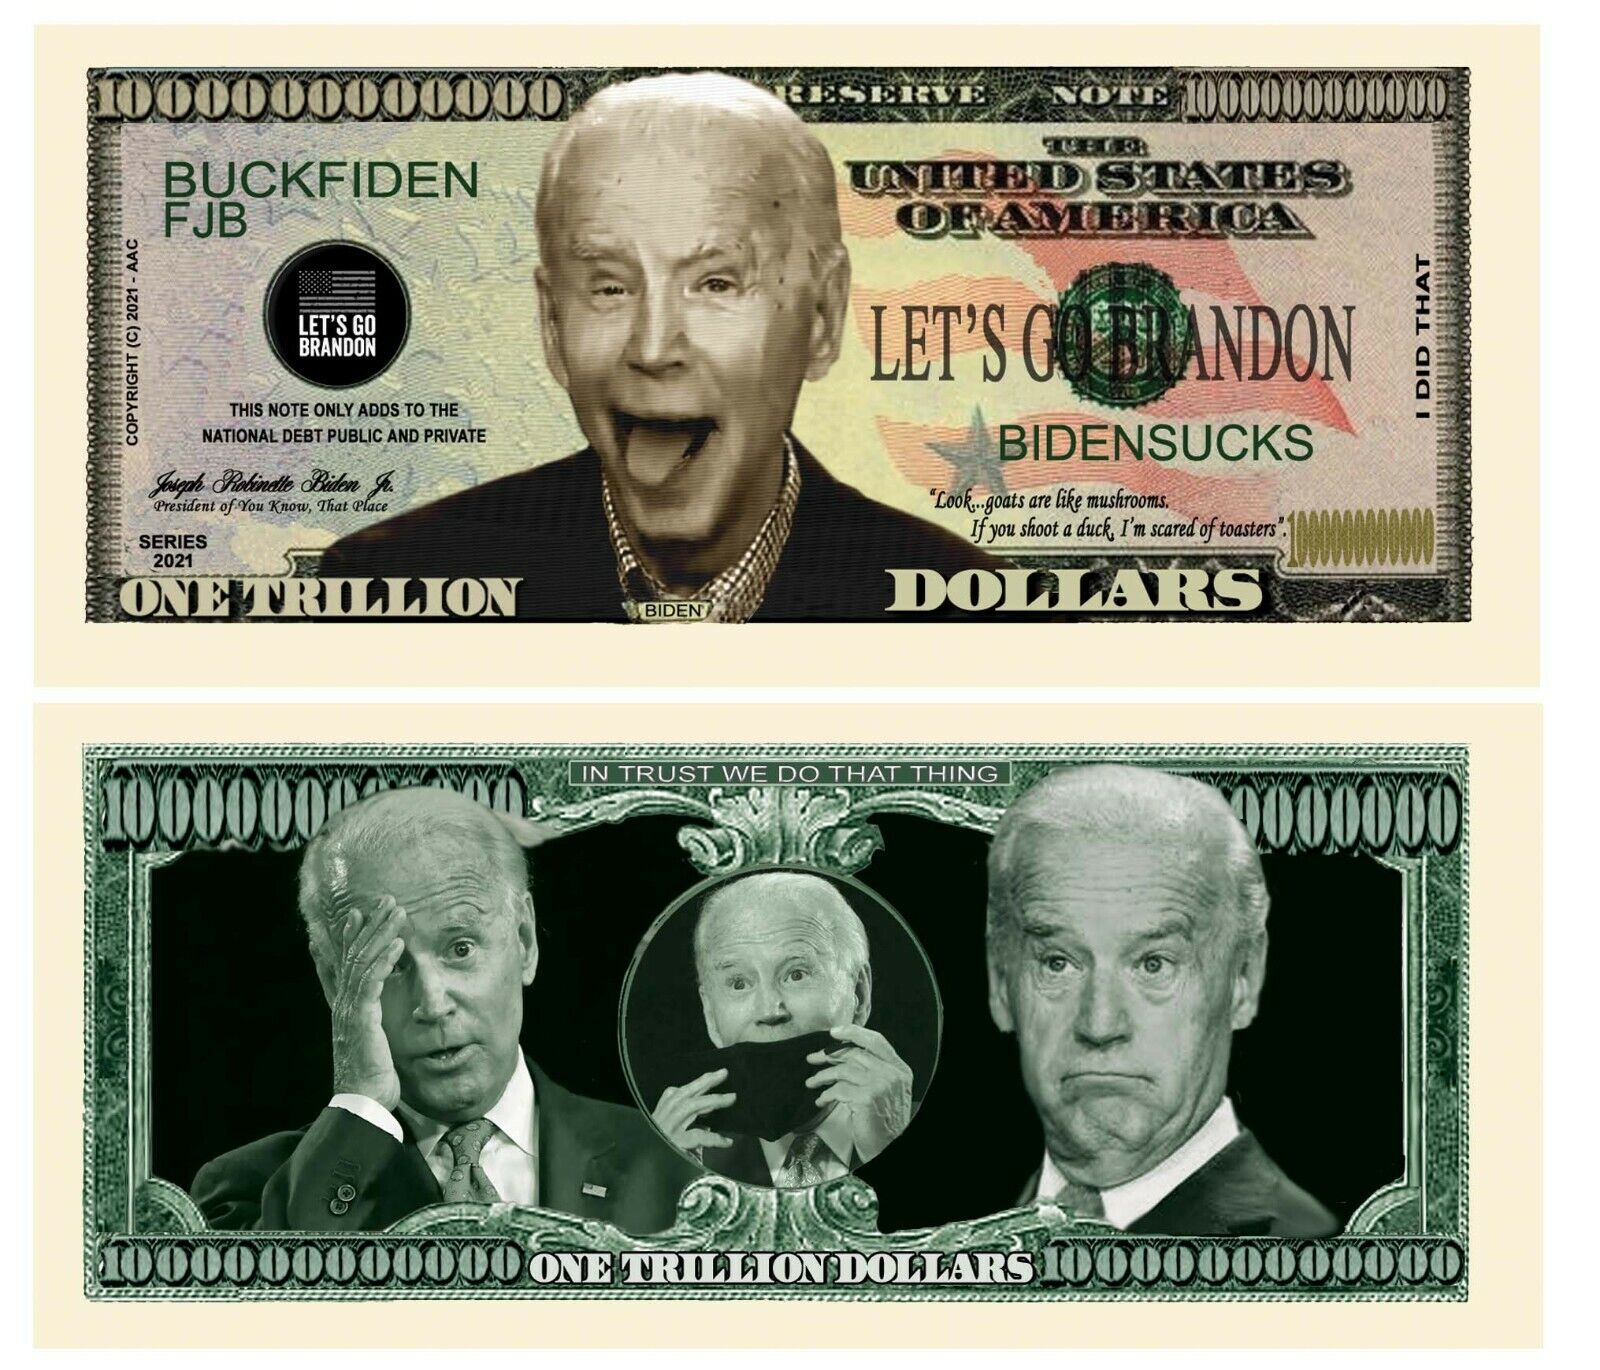 Pack of 50 - Joe Biden Sucks FJB Let's Go Brandon MAGA Novelty Dollar Bills